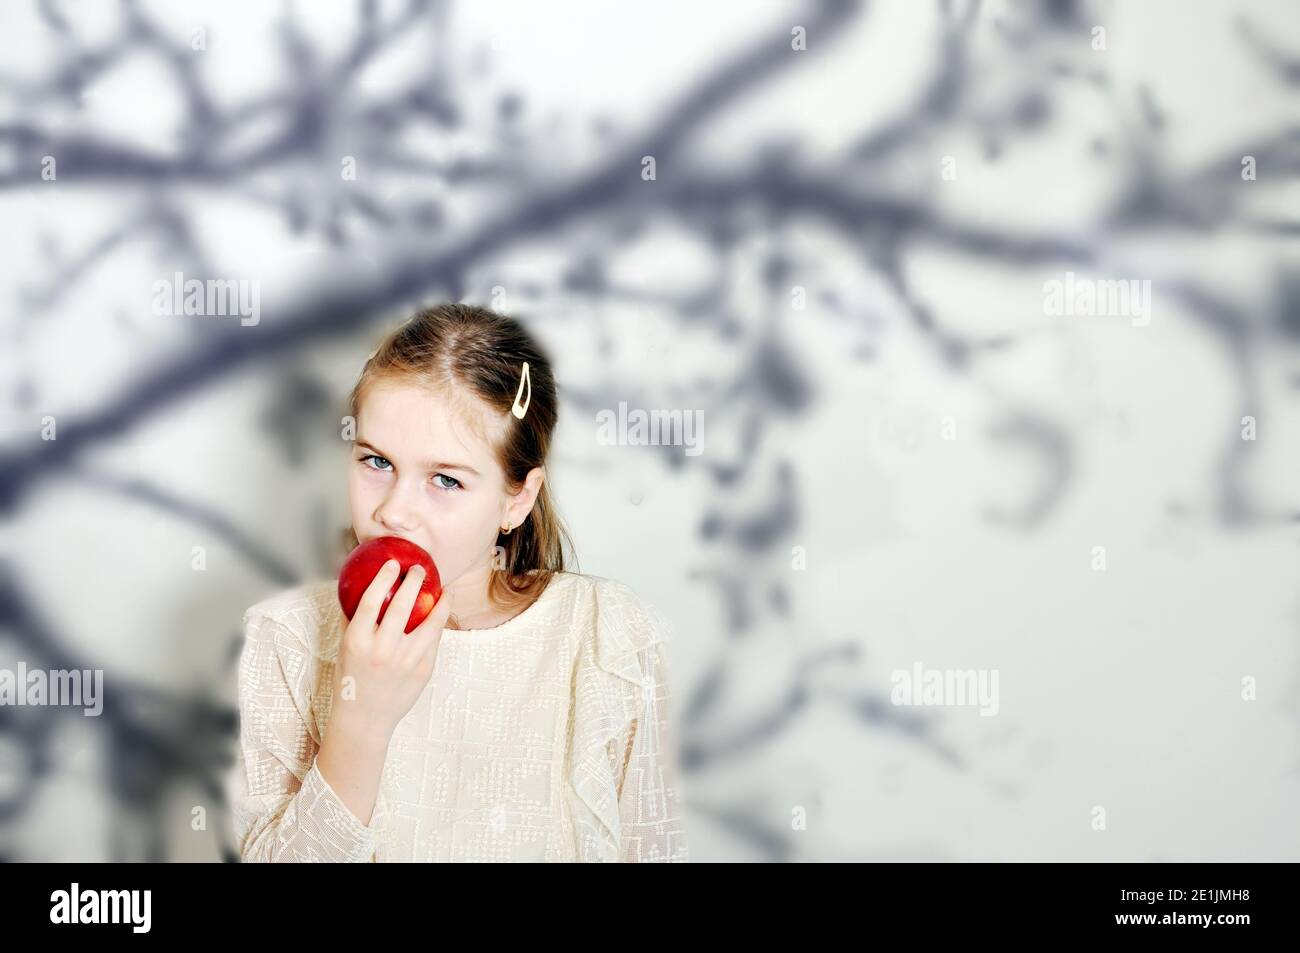 Blanche fille caucasienne (enfant, enfant) mange une pomme rouge Banque D'Images